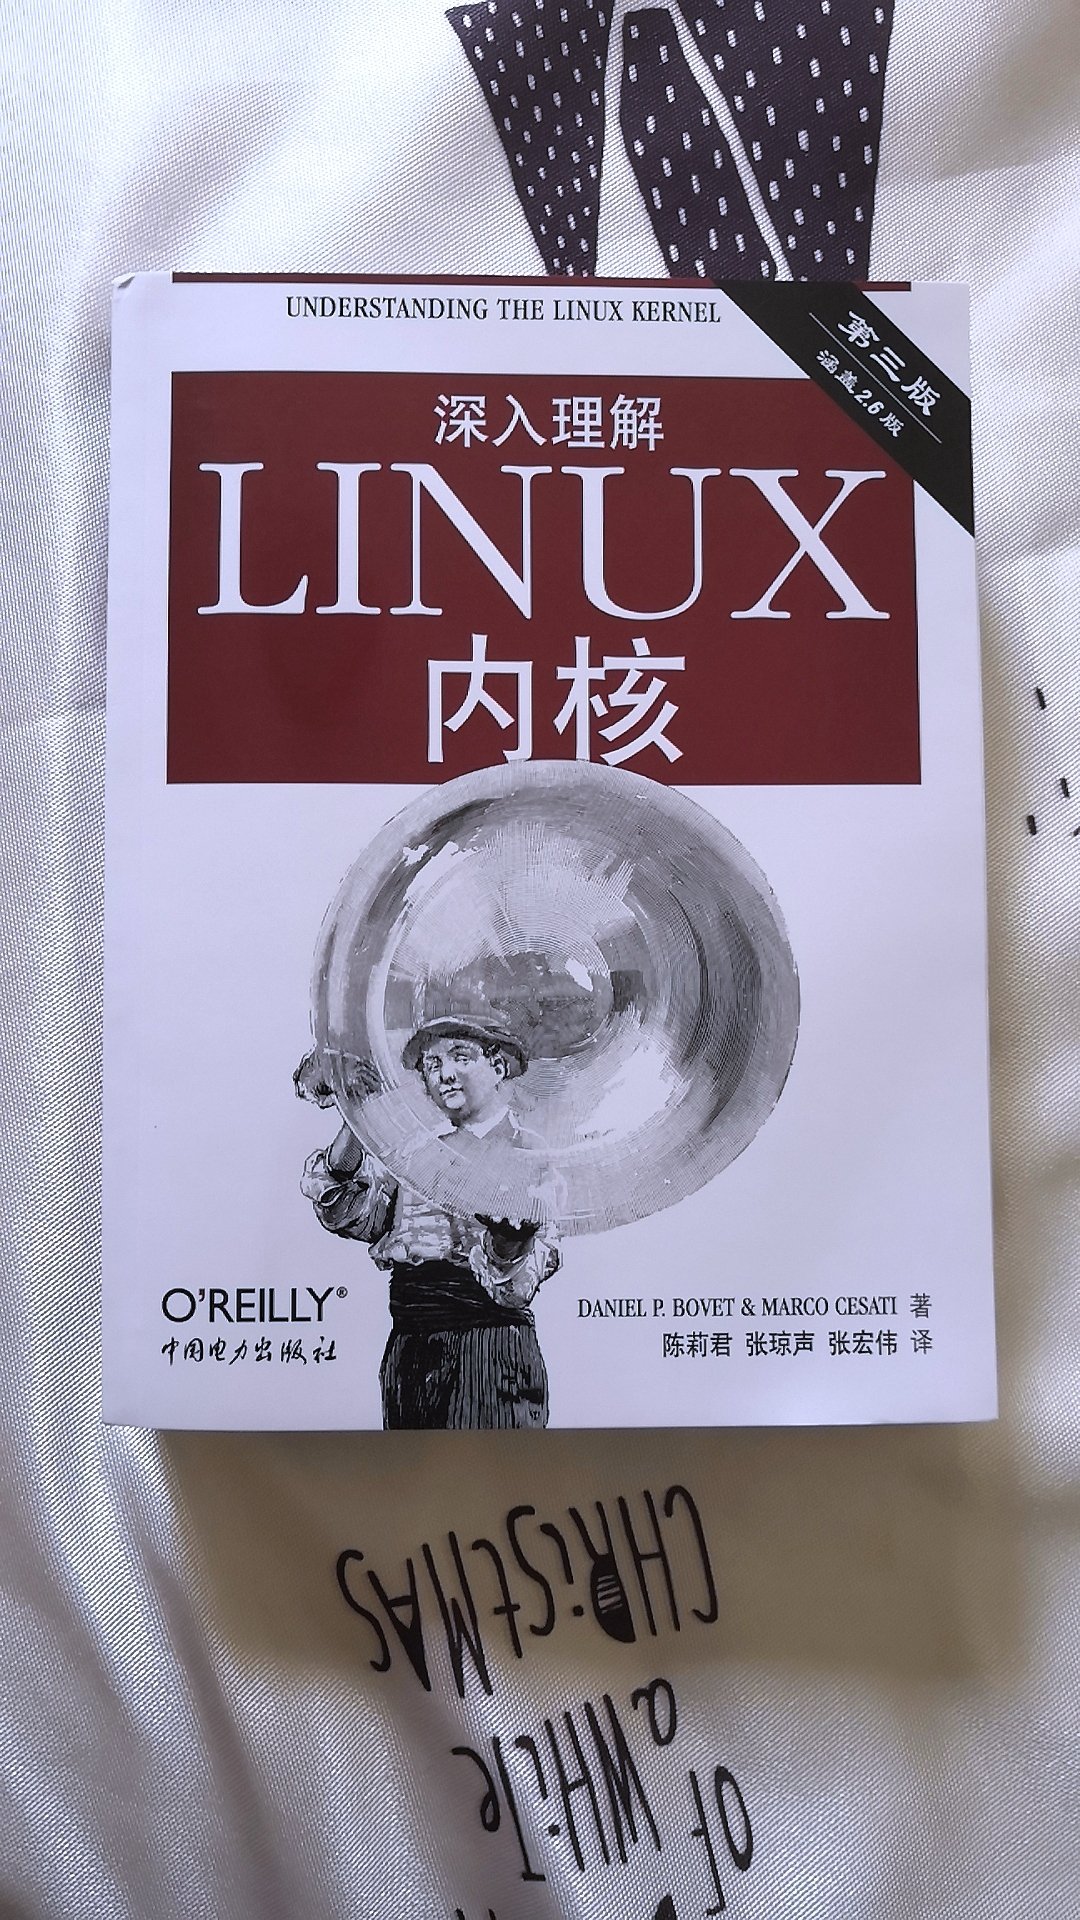 透彻解析Linux工作机理，深入内核，理解CPu和外部世界是如何交互的。透过现象看本质，庖丁解牛。